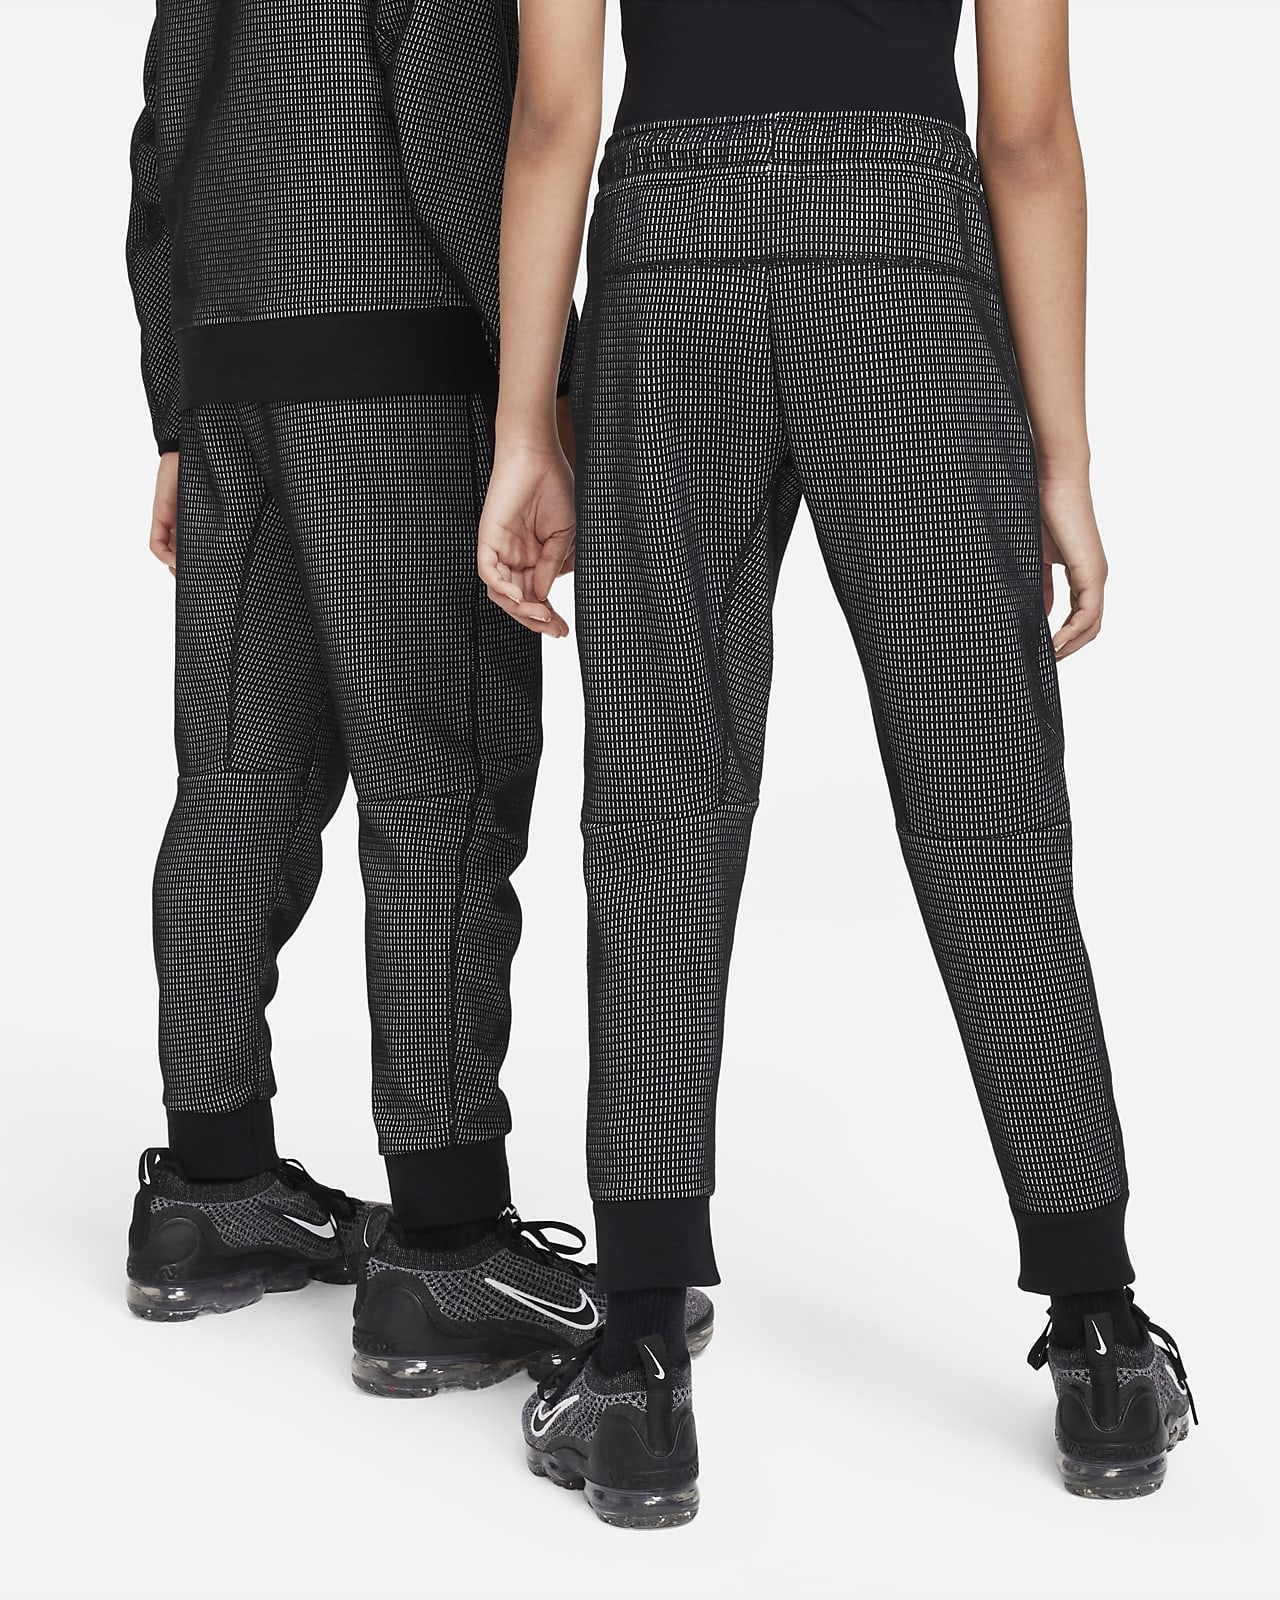 Nike Boy's Sportswear Tech Fleece Trousers - University Red/Black